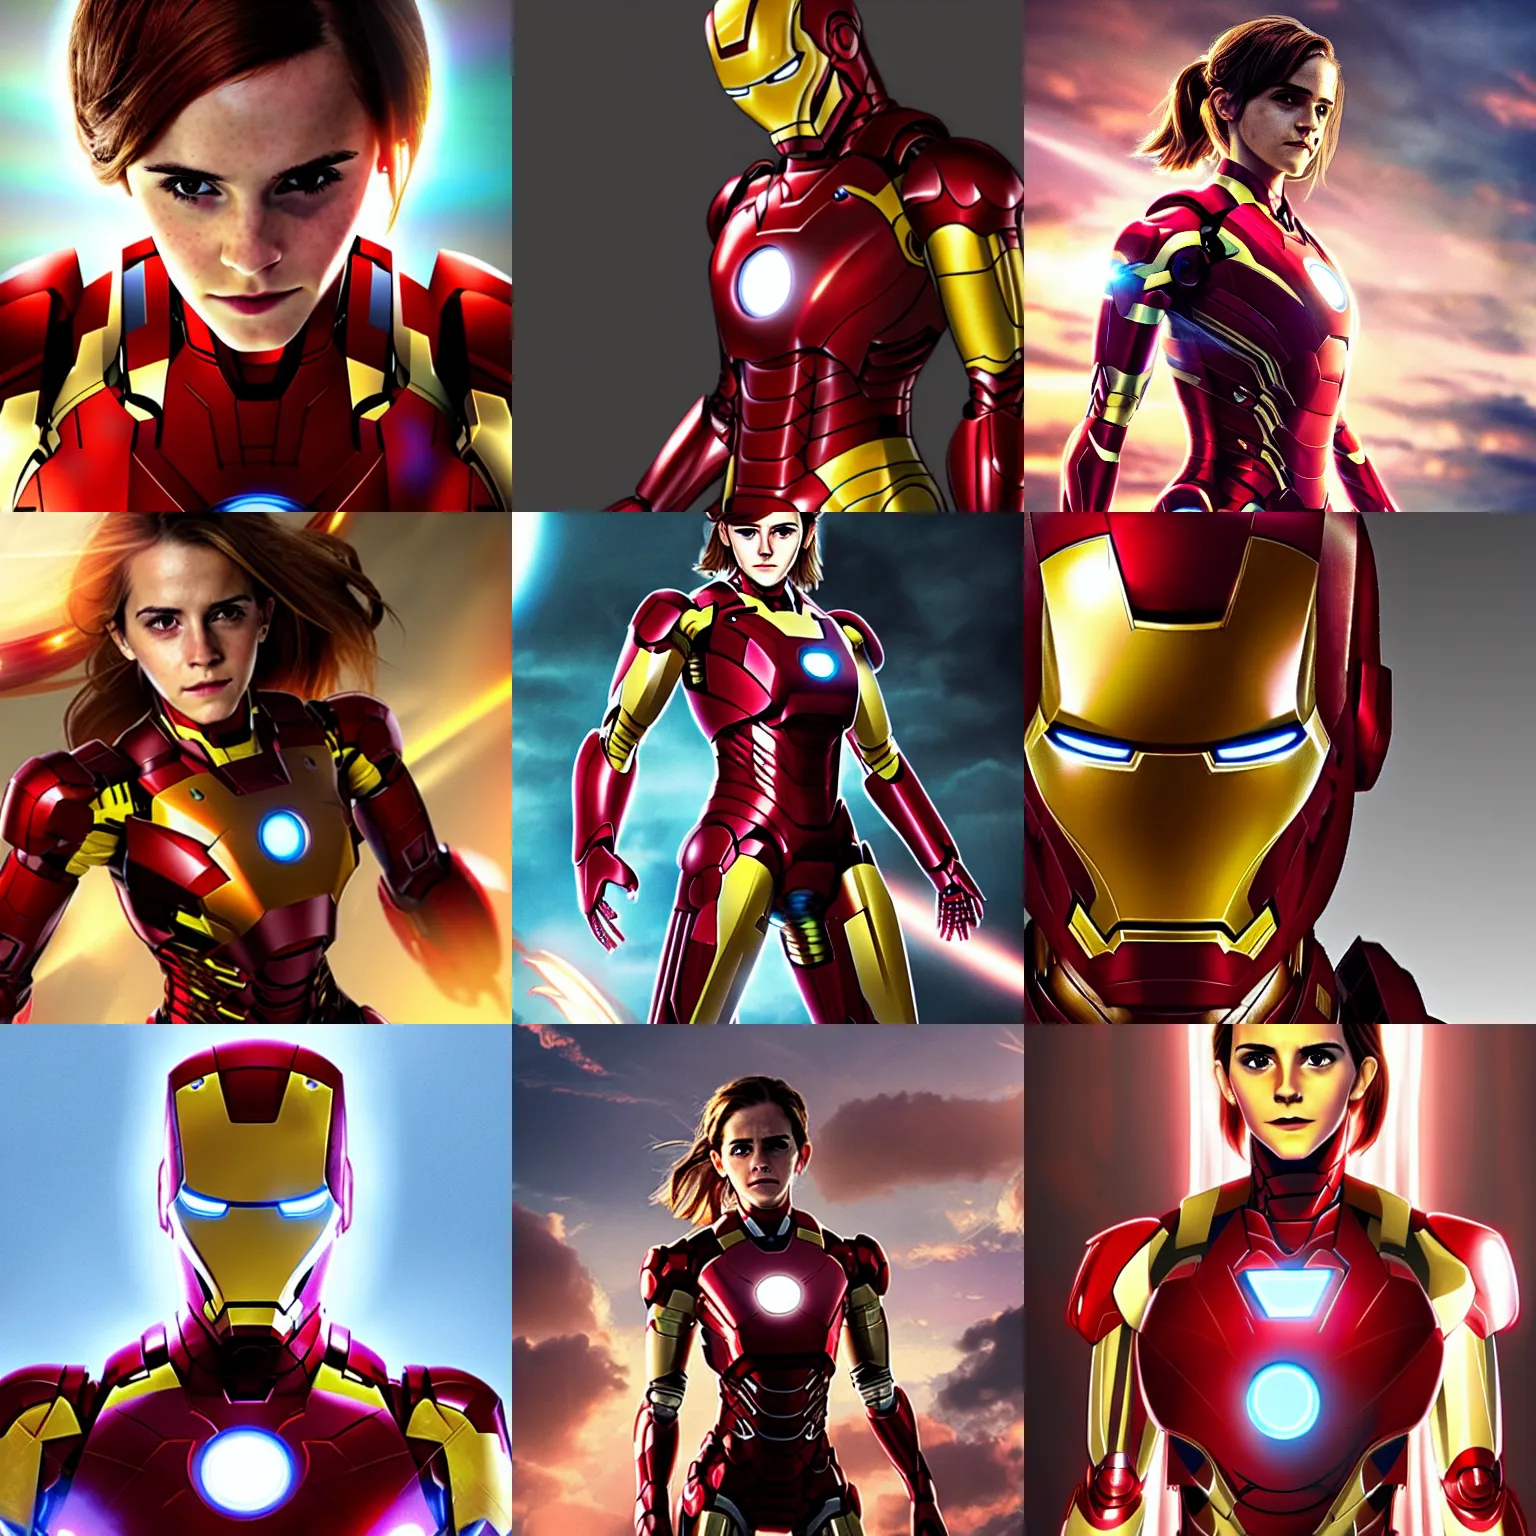 Iron Man & Wolverine Anime due 2010 : r/anime